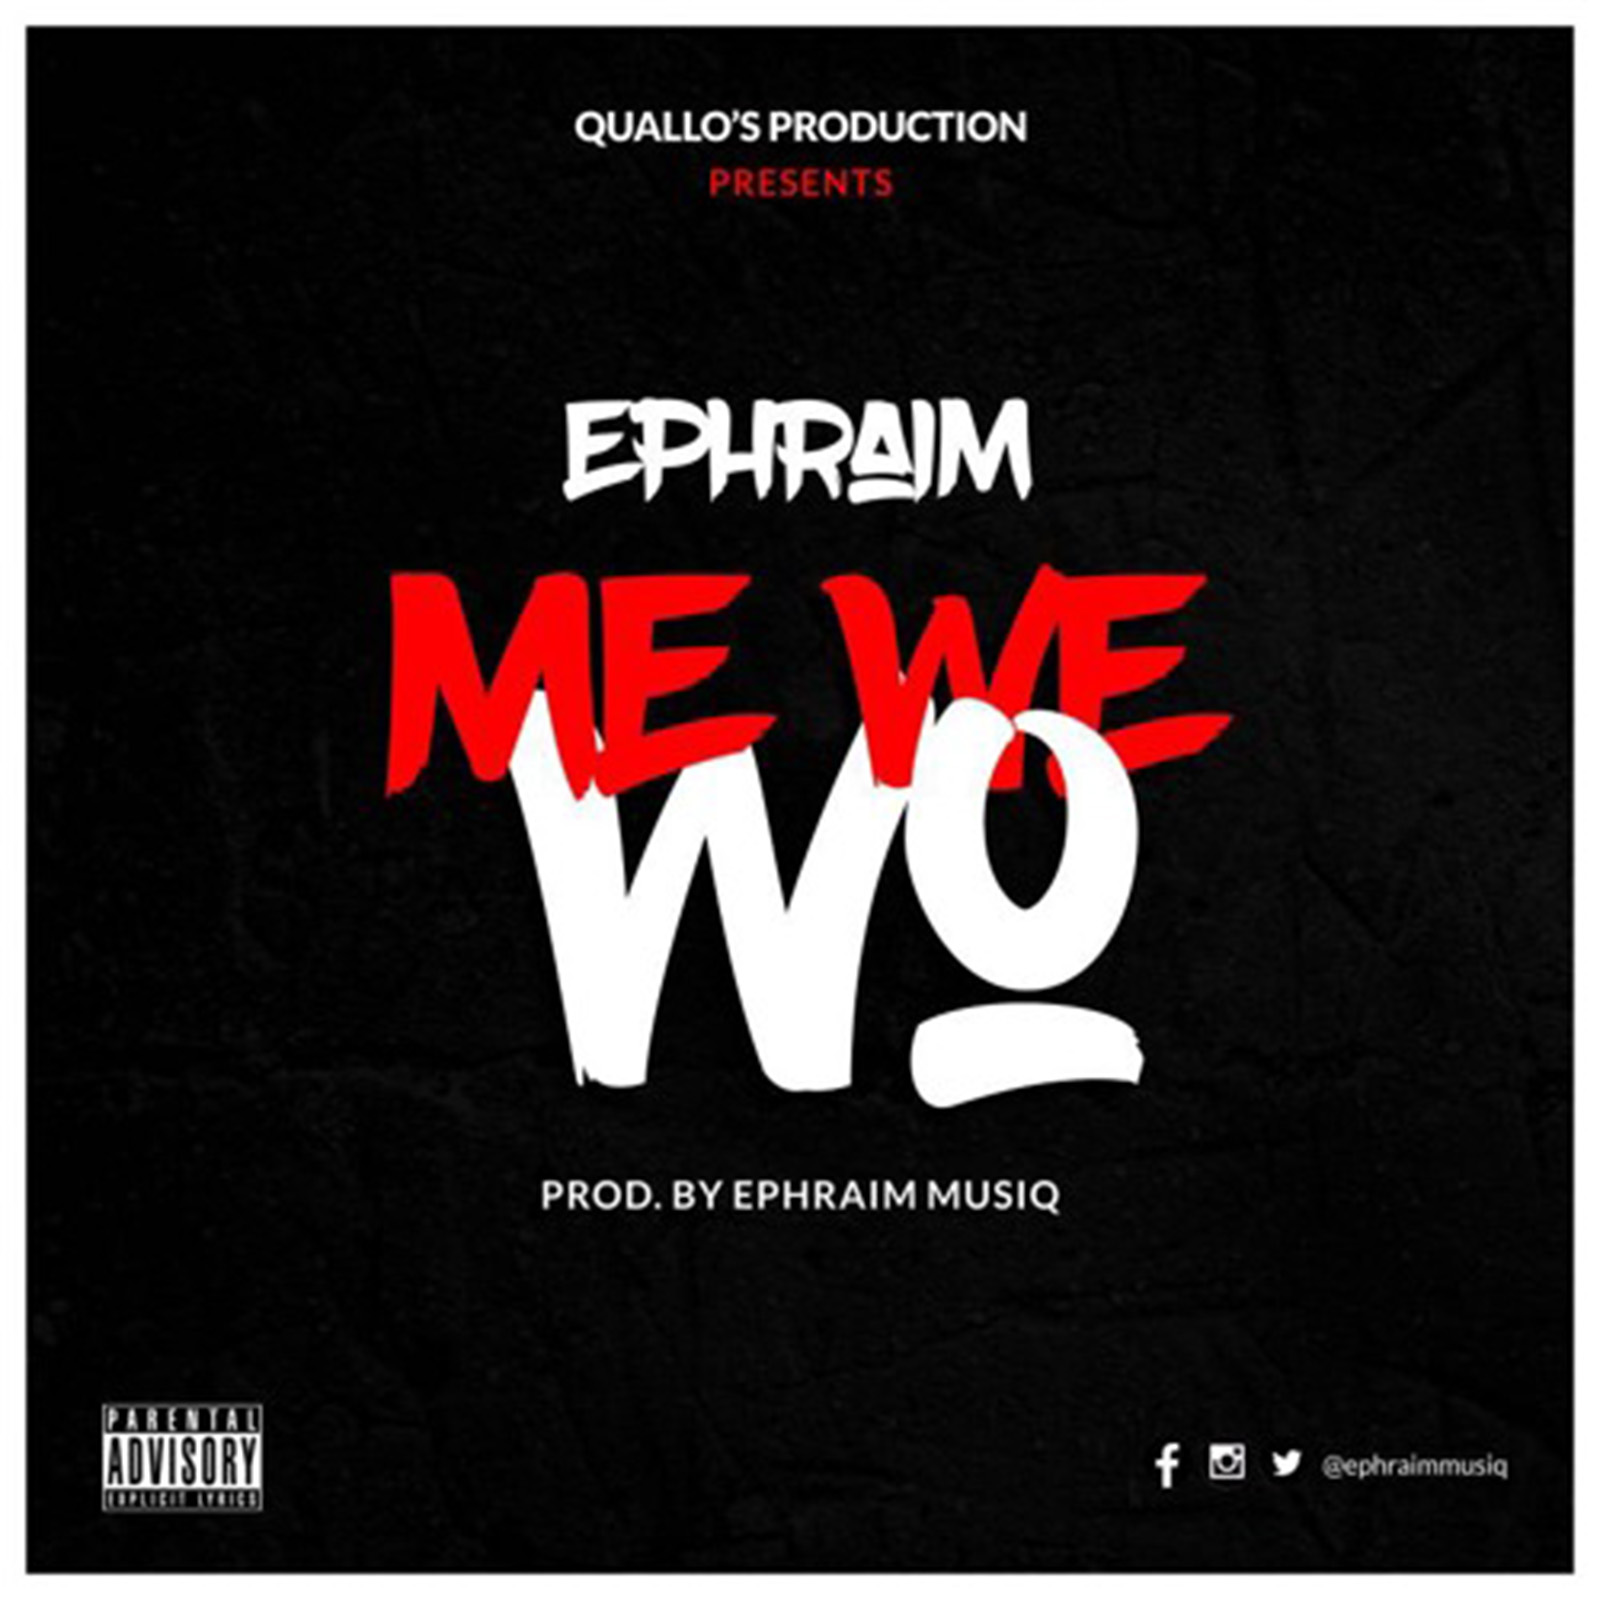 Me We Wo by Ephraim